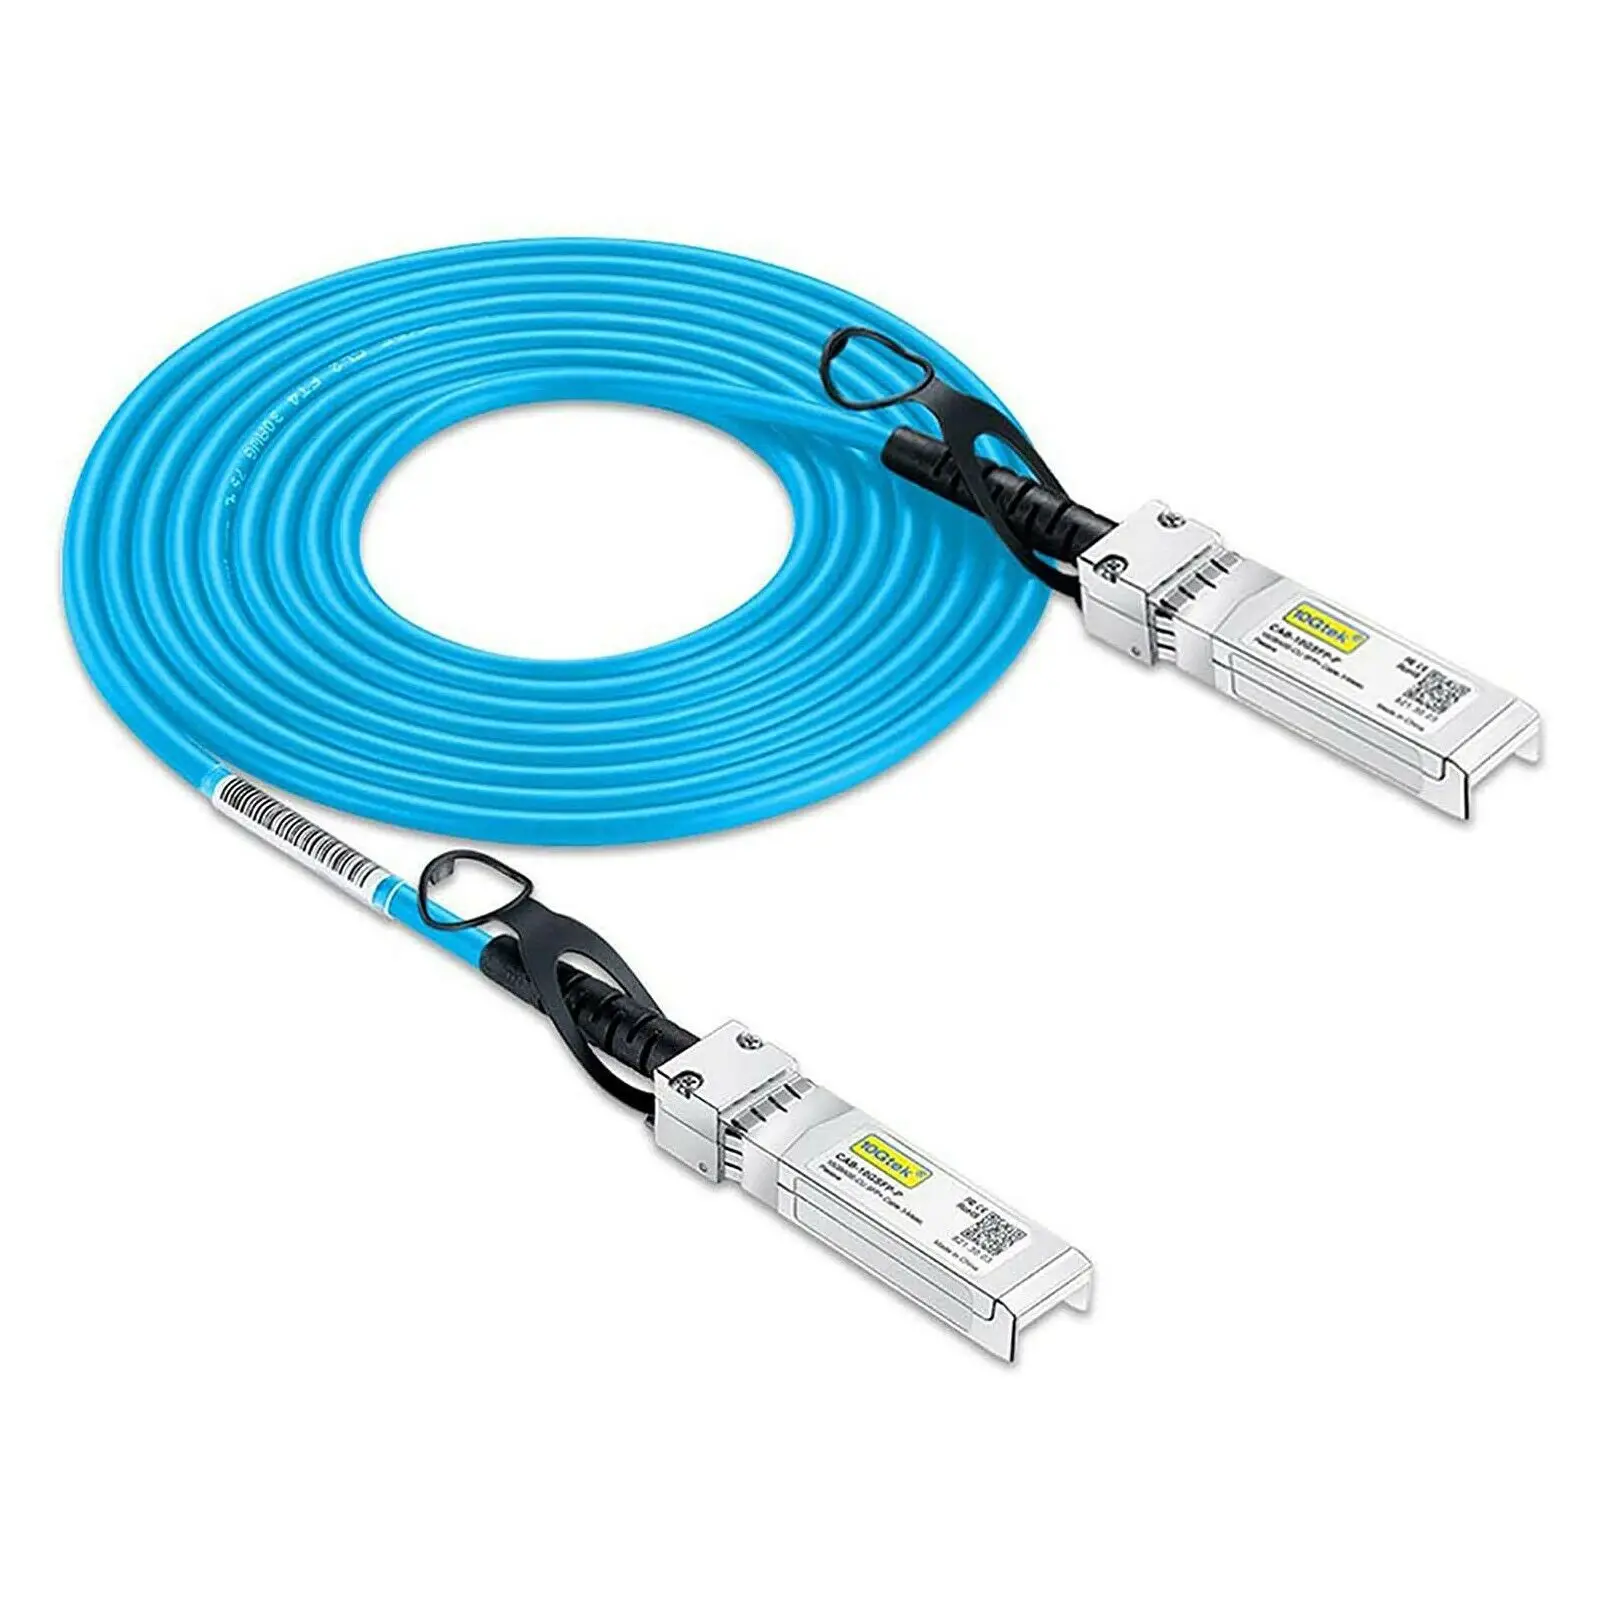 [Blue] Colored 10G SFP+ DAC Cable - Twinax SFP Cable for Cisco SFP-H10GB-CU1M, Arista, Ubiquiti,D-Link, Netgear,1-Meter(3.3ft) накладка для геймпада csgo cs go blue skins для steam link